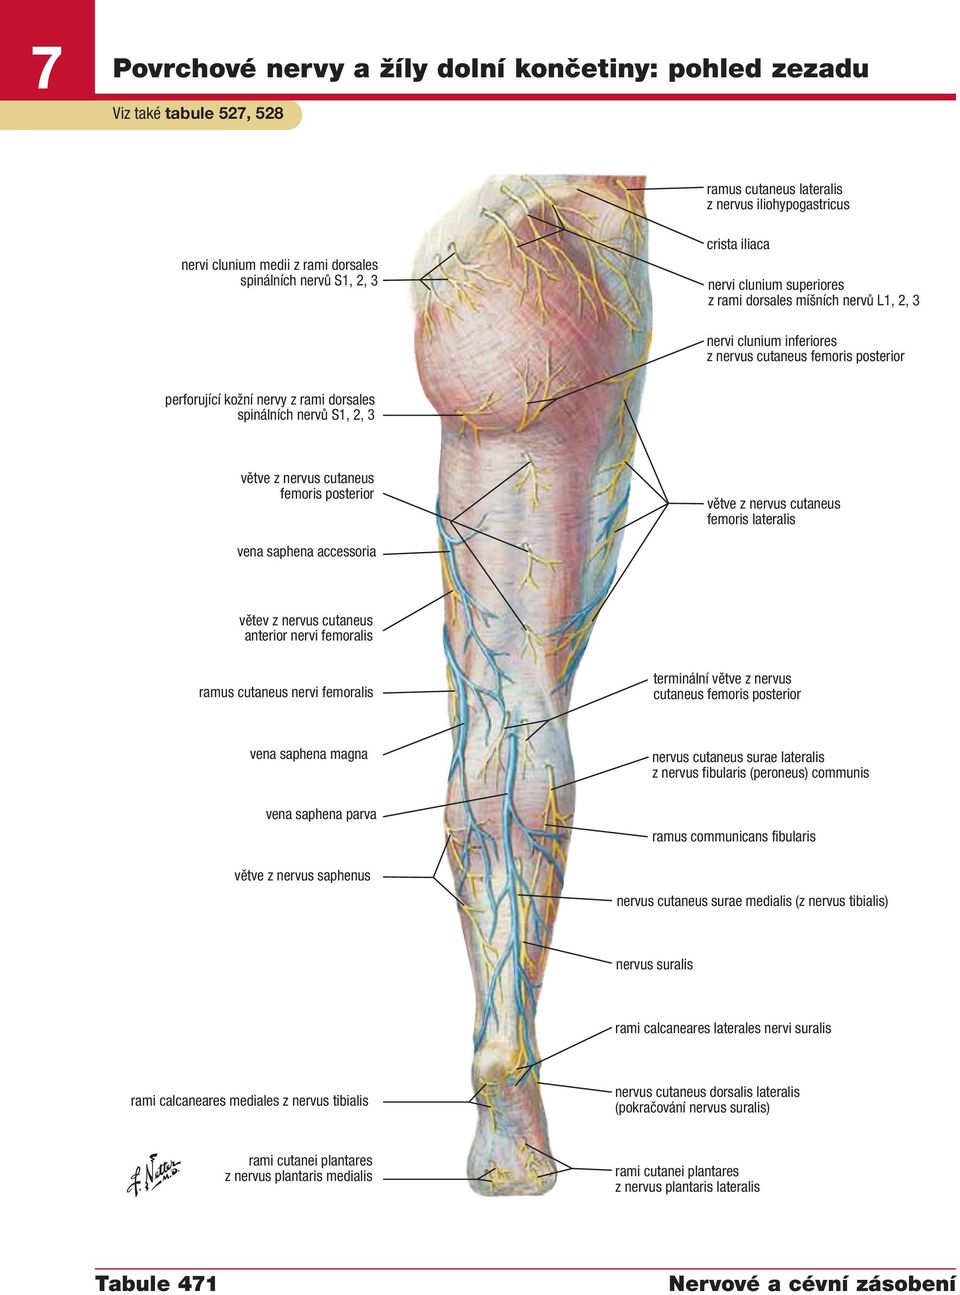 cutaneus femoris posterior větve z nervus cutaneus femoris lateralis vena saphena accessoria větev z nervus cutaneus anterior nervi femoralis ramus cutaneus nervi femoralis terminální větve z nervus